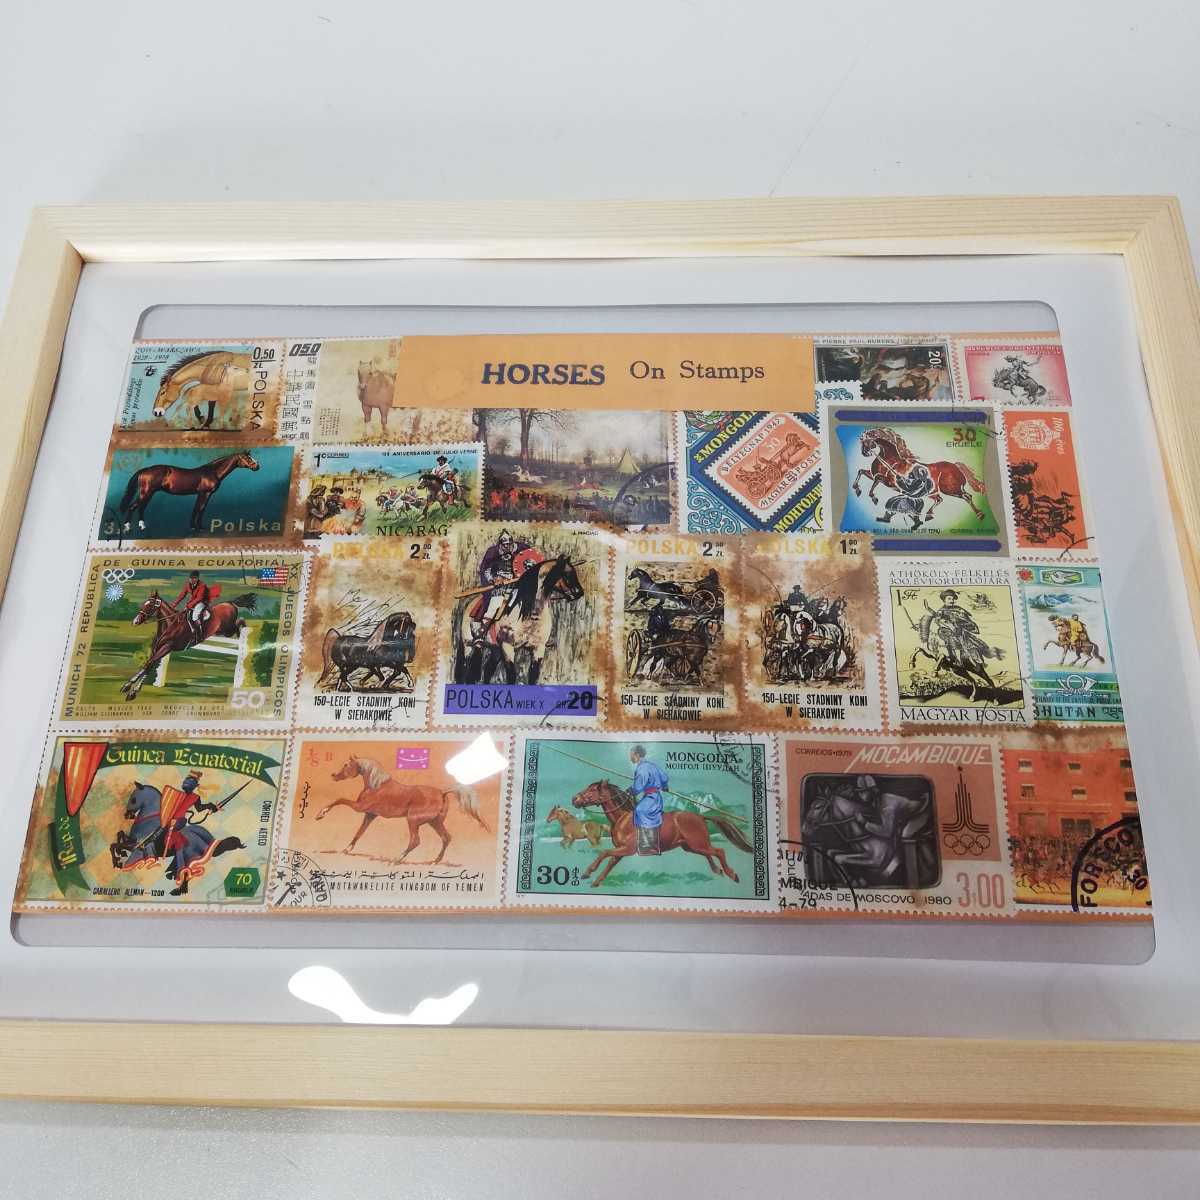 Vintage HORSES On Stamps 世界の馬の切手 額装品アート 32cm×23.5cm [壁掛け ビンテージ雑貨 海外土産物 モンゴル ブータン ポーランド]の画像2